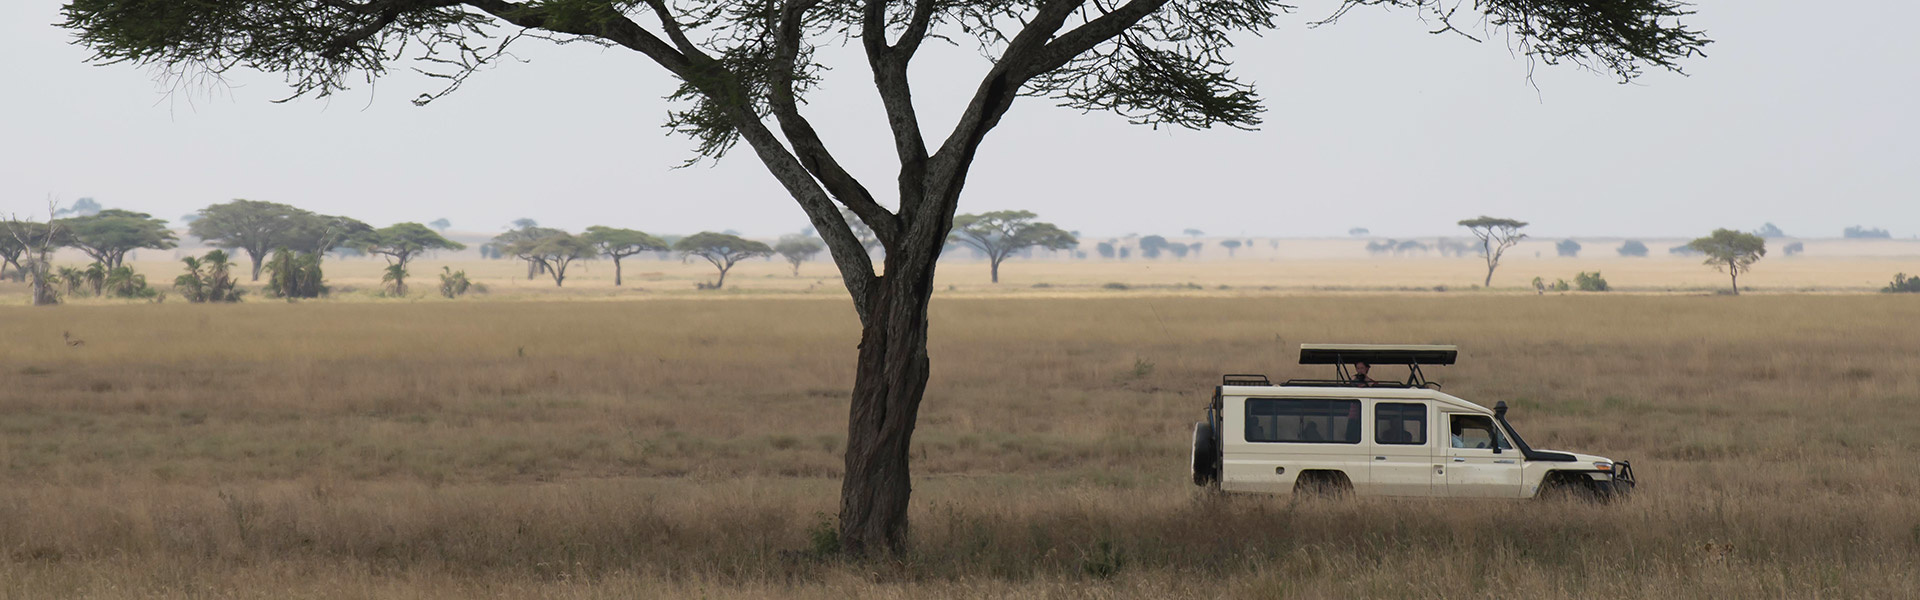 Safaris & voyages sur-mesure | Sous l'Acacia